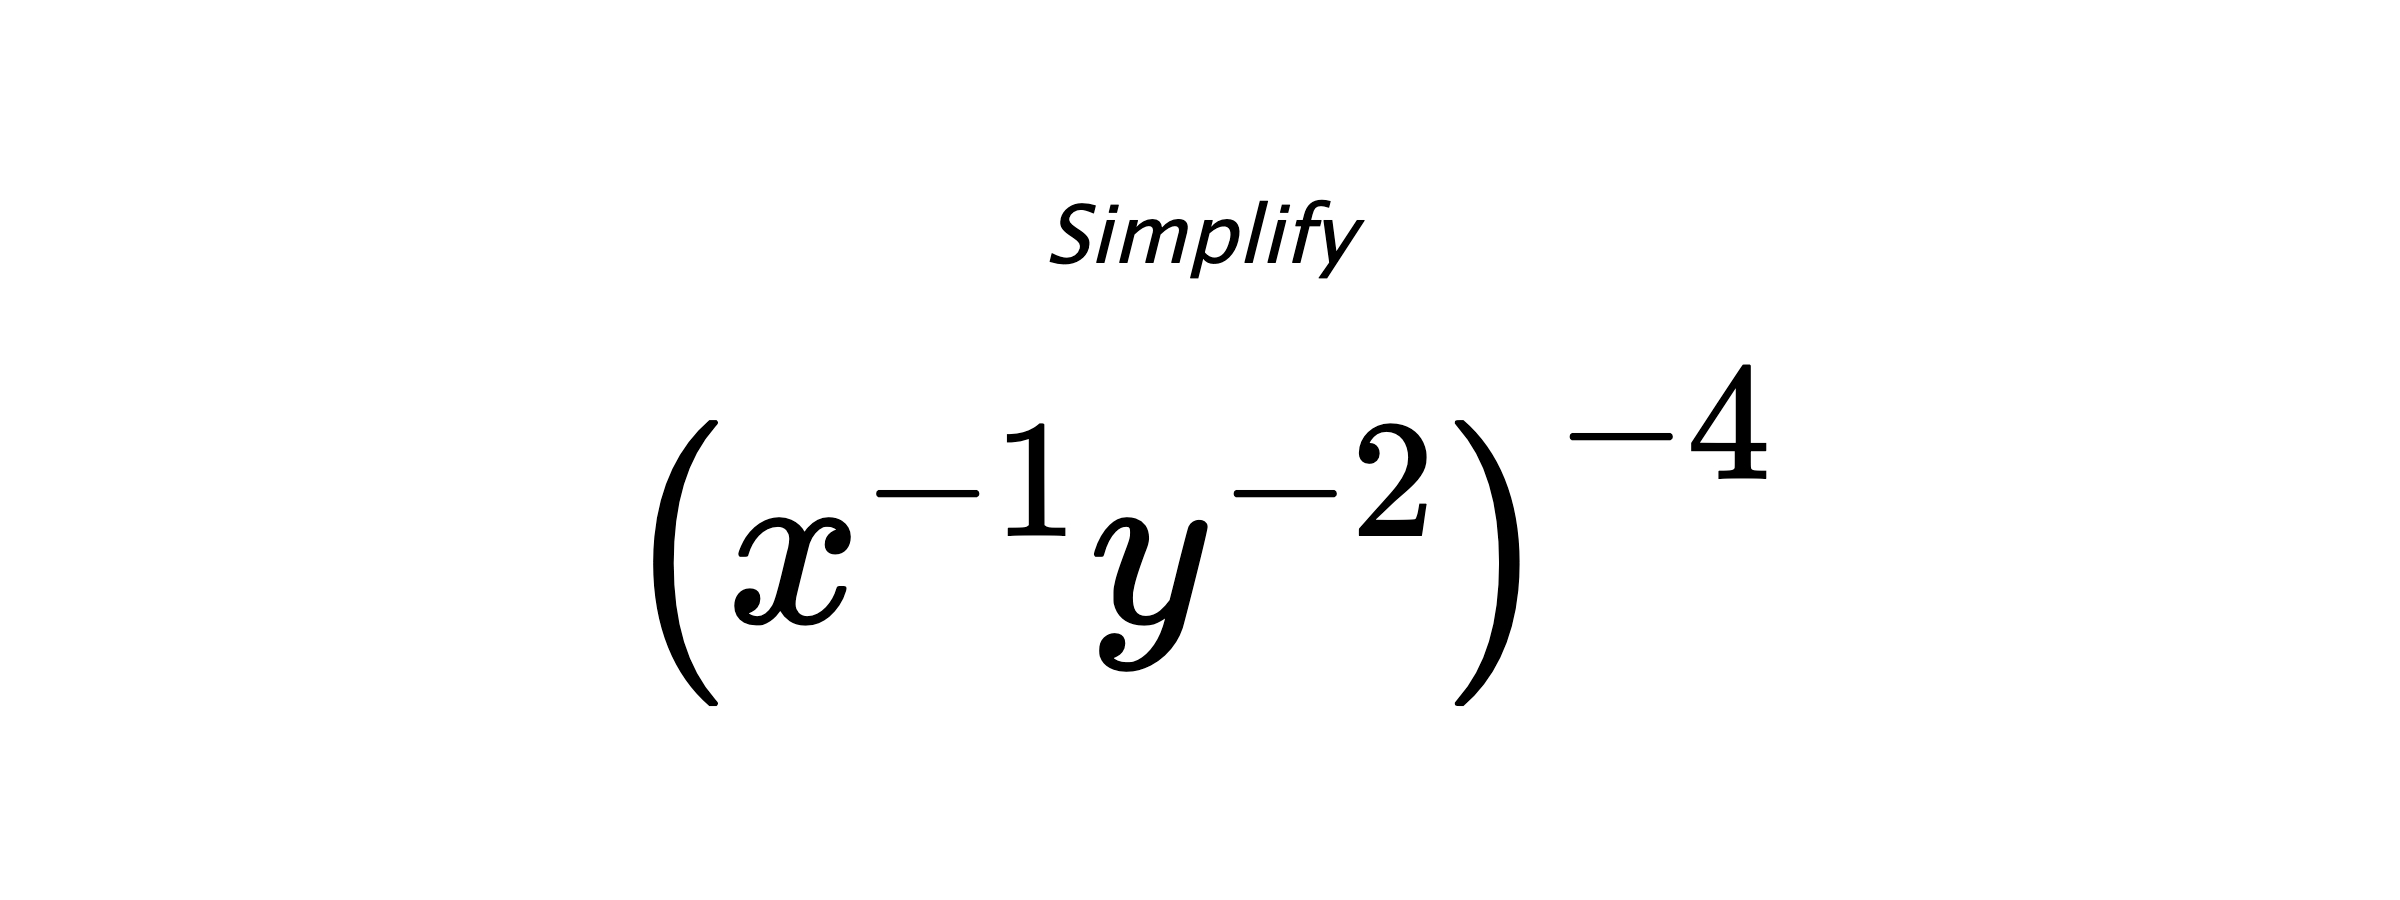 Simplify $ \left(x^{-1}y^{-2}\right)^{-4} $